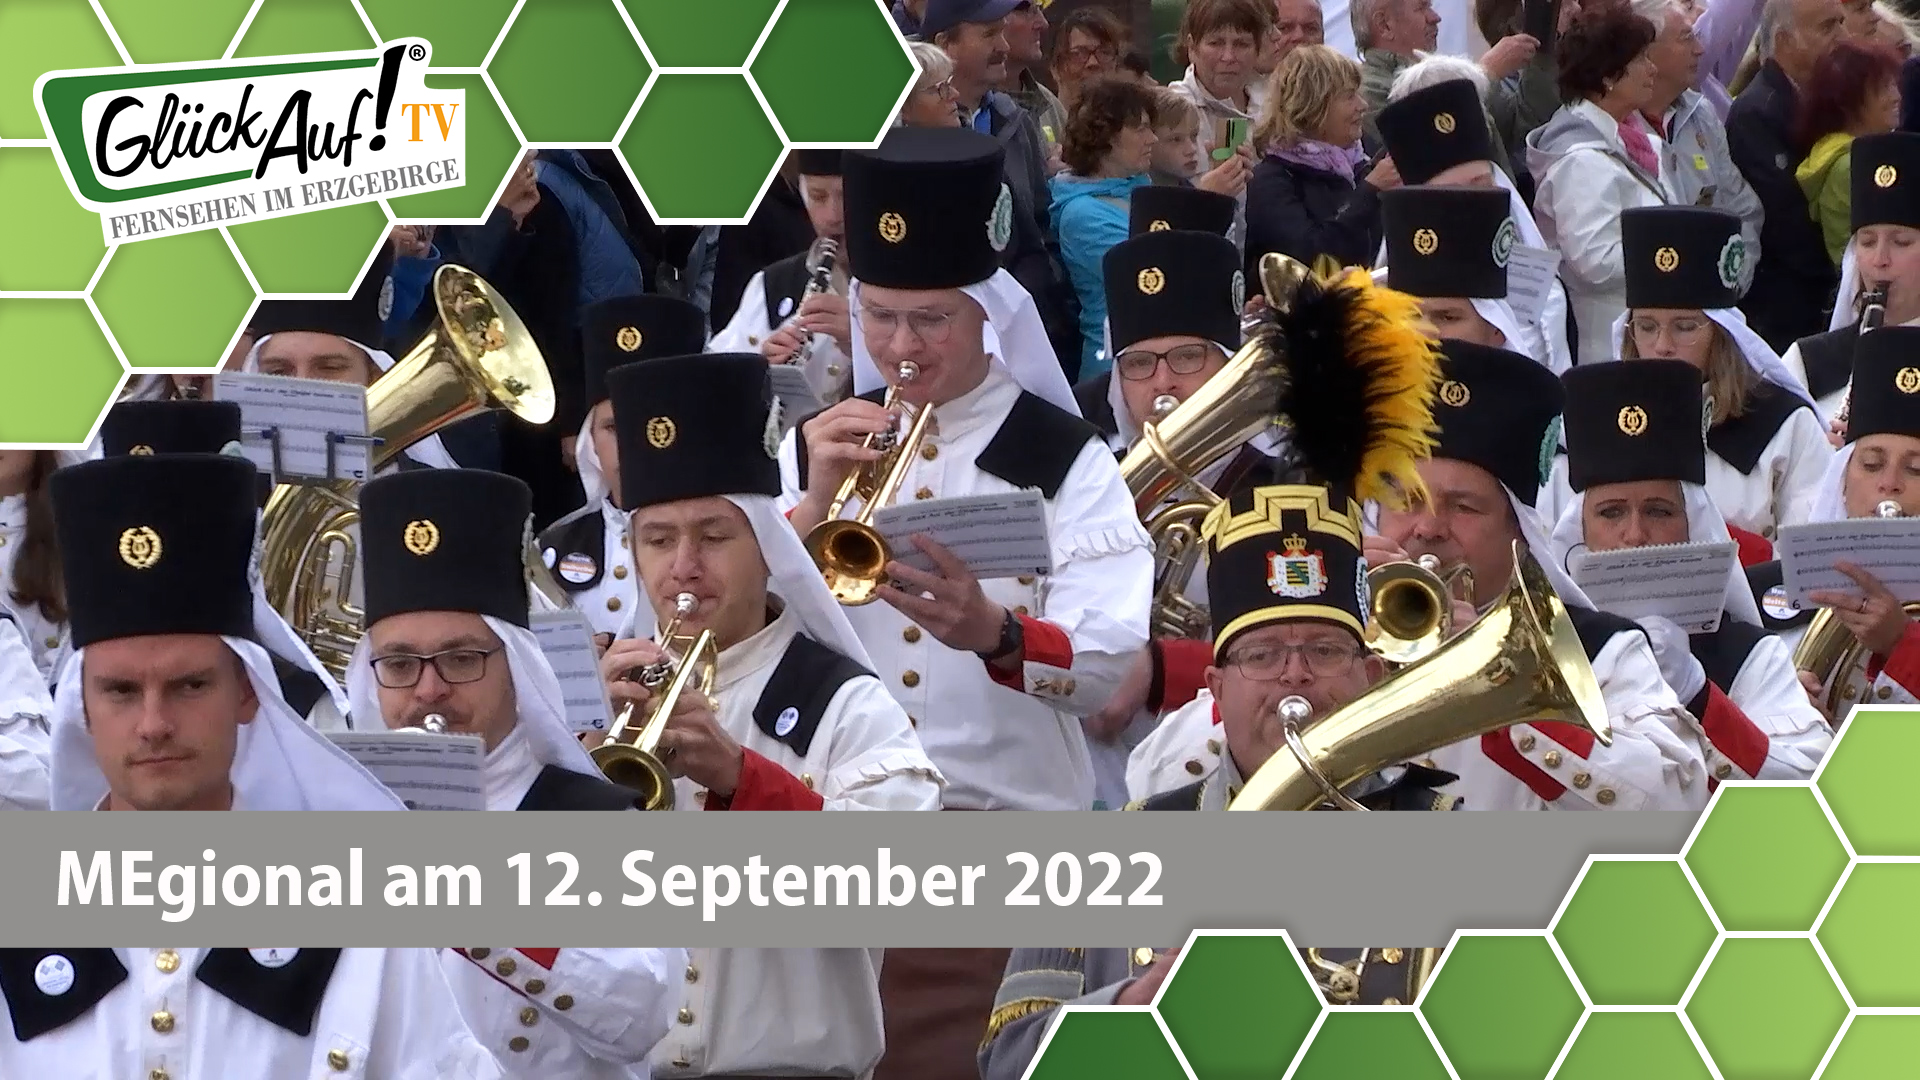 MEgional am 12. September 2022 - mit Ausschnitten der Großen Bergparade in Olbernhau